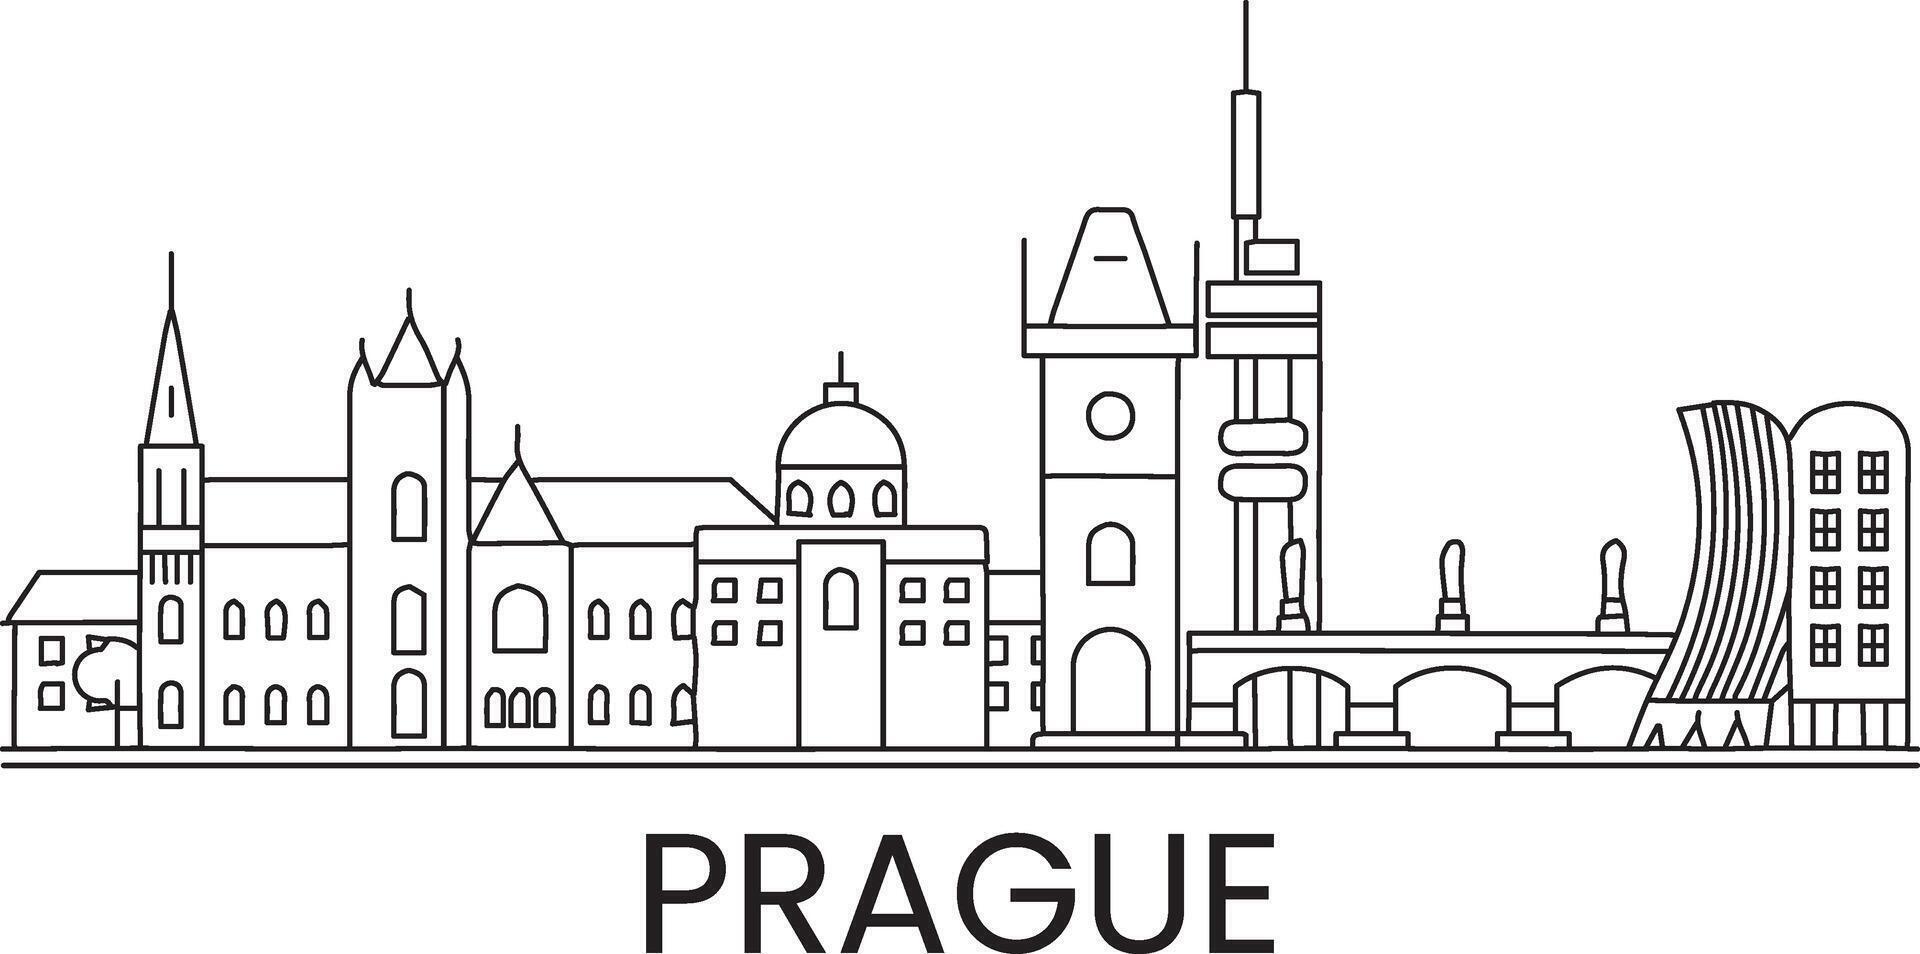 Praga ciudad línea dibujar gratis vector